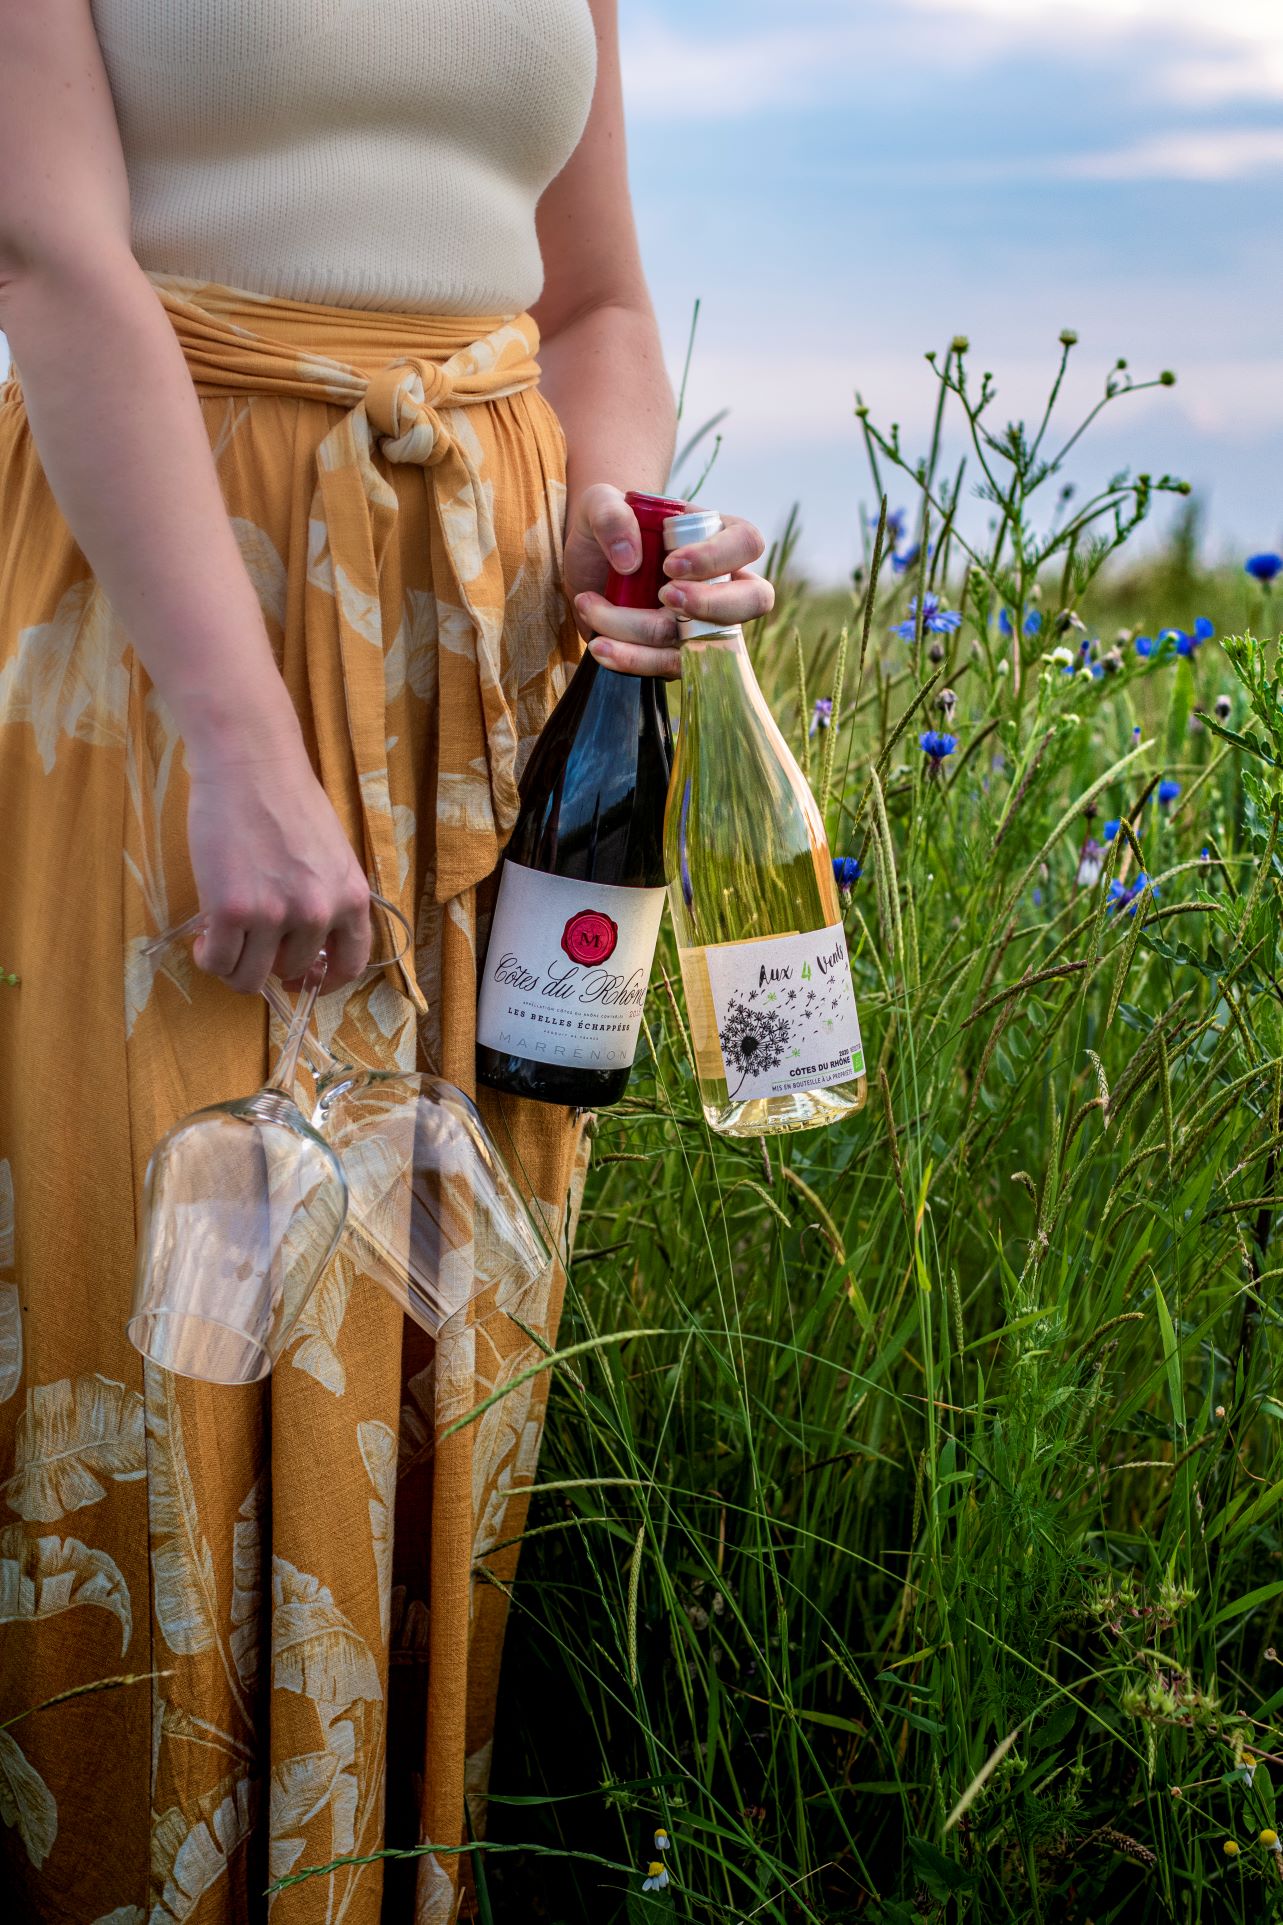 Picknick mit Côtes du Rhone Weinen